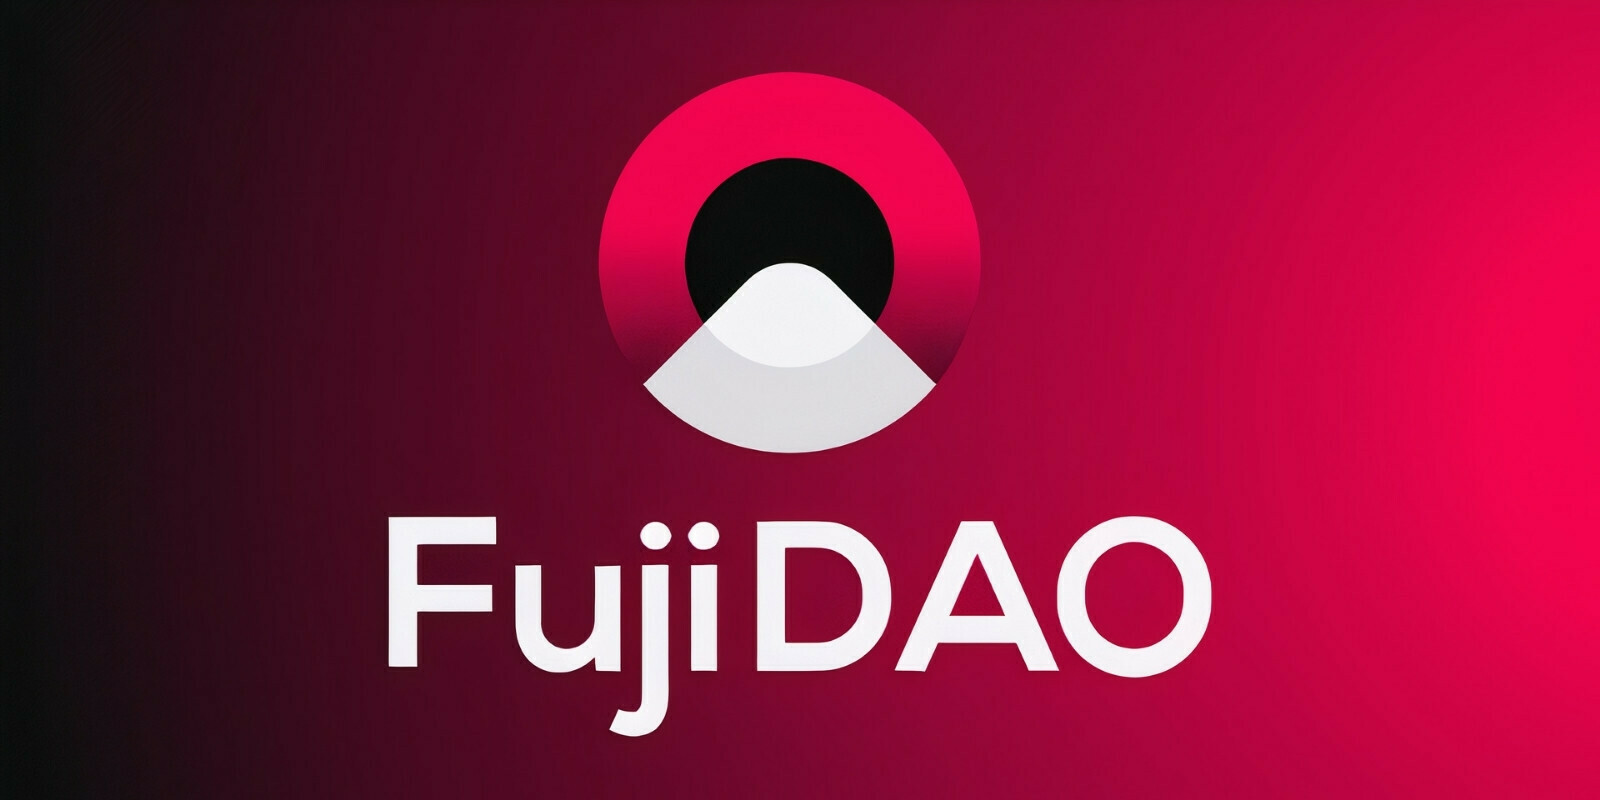 Fuji DAO, le protocole permettant d'emprunter des cryptomonnaies au meilleur taux